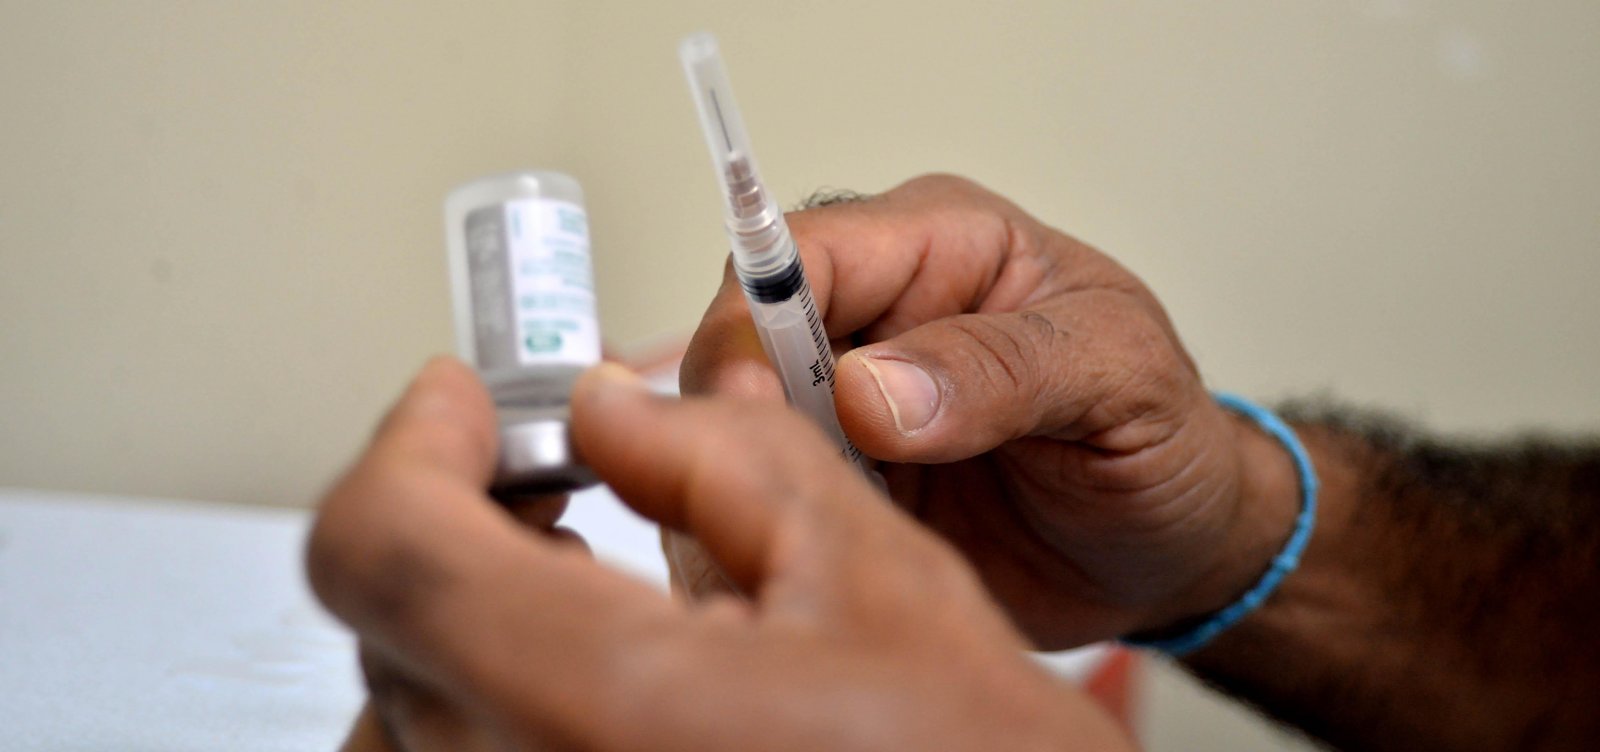 Prefeitura estuda como evitar fraudes durante vacinação contra a Covid-19